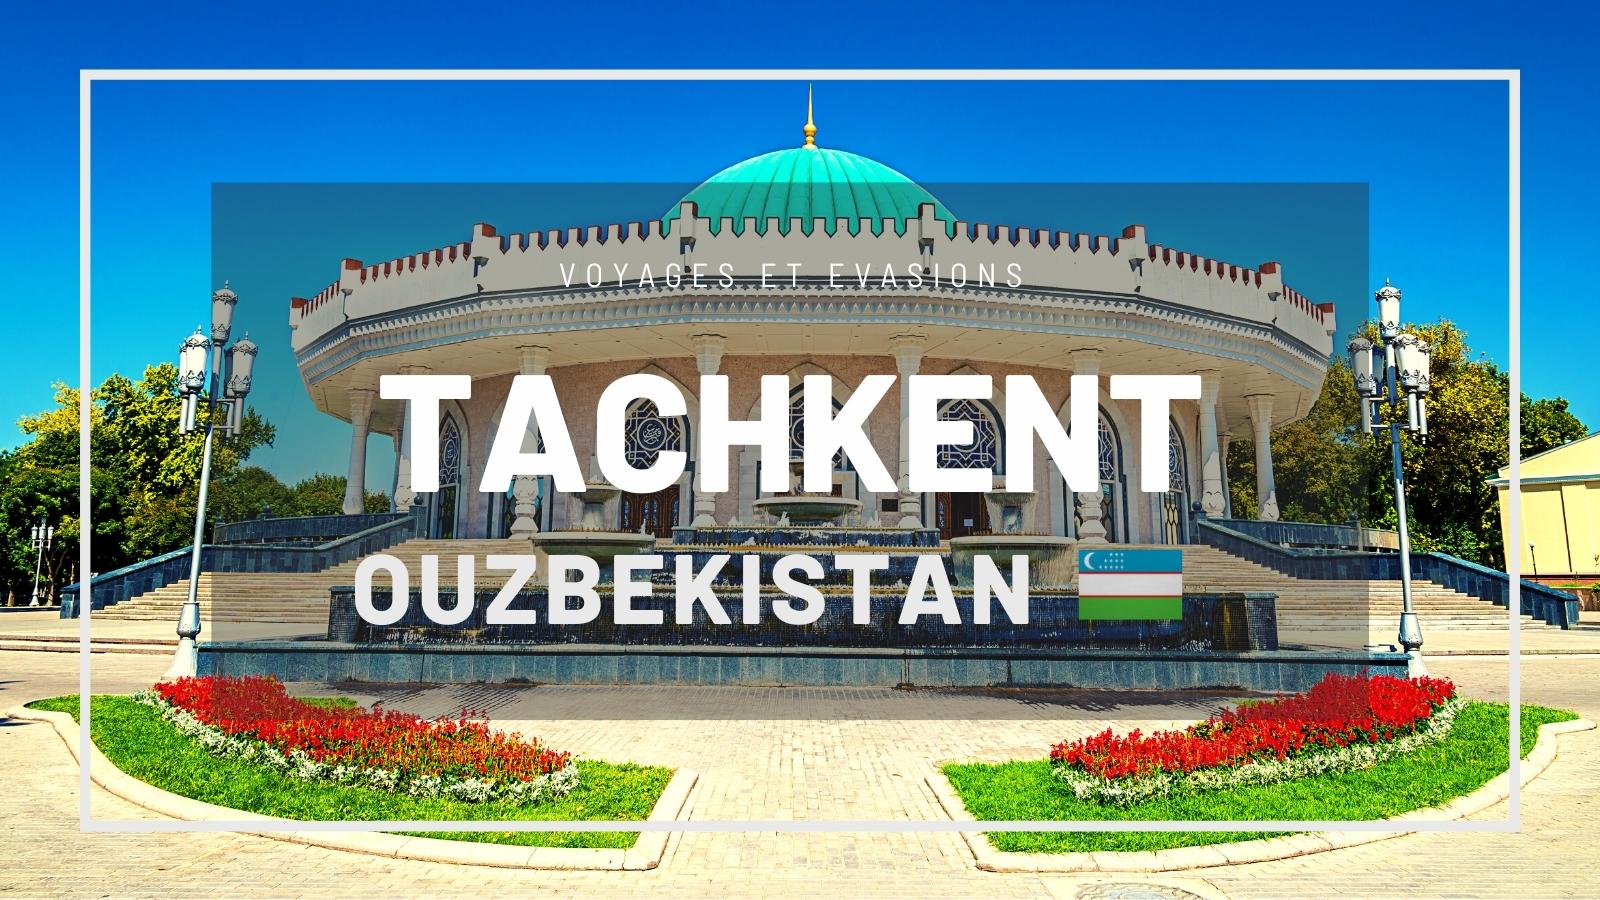 Tachkent en Ouzbékistan